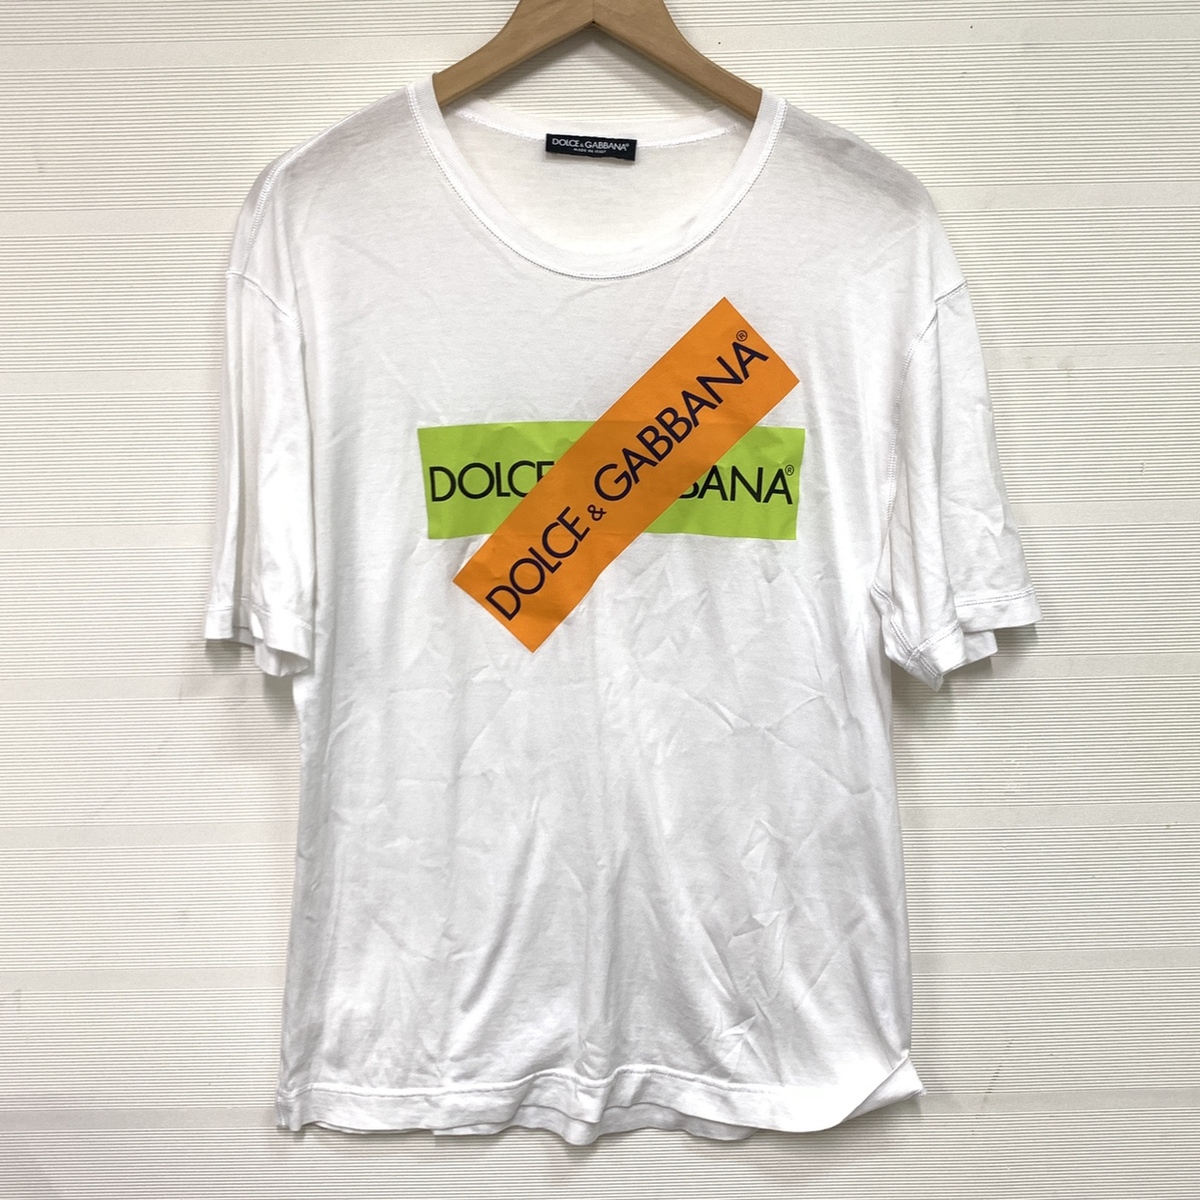 ドルチェ&ガッバーナのホワイト オレンジ グリーン ロゴ デザイン 半袖Tシャツの買取実績です。